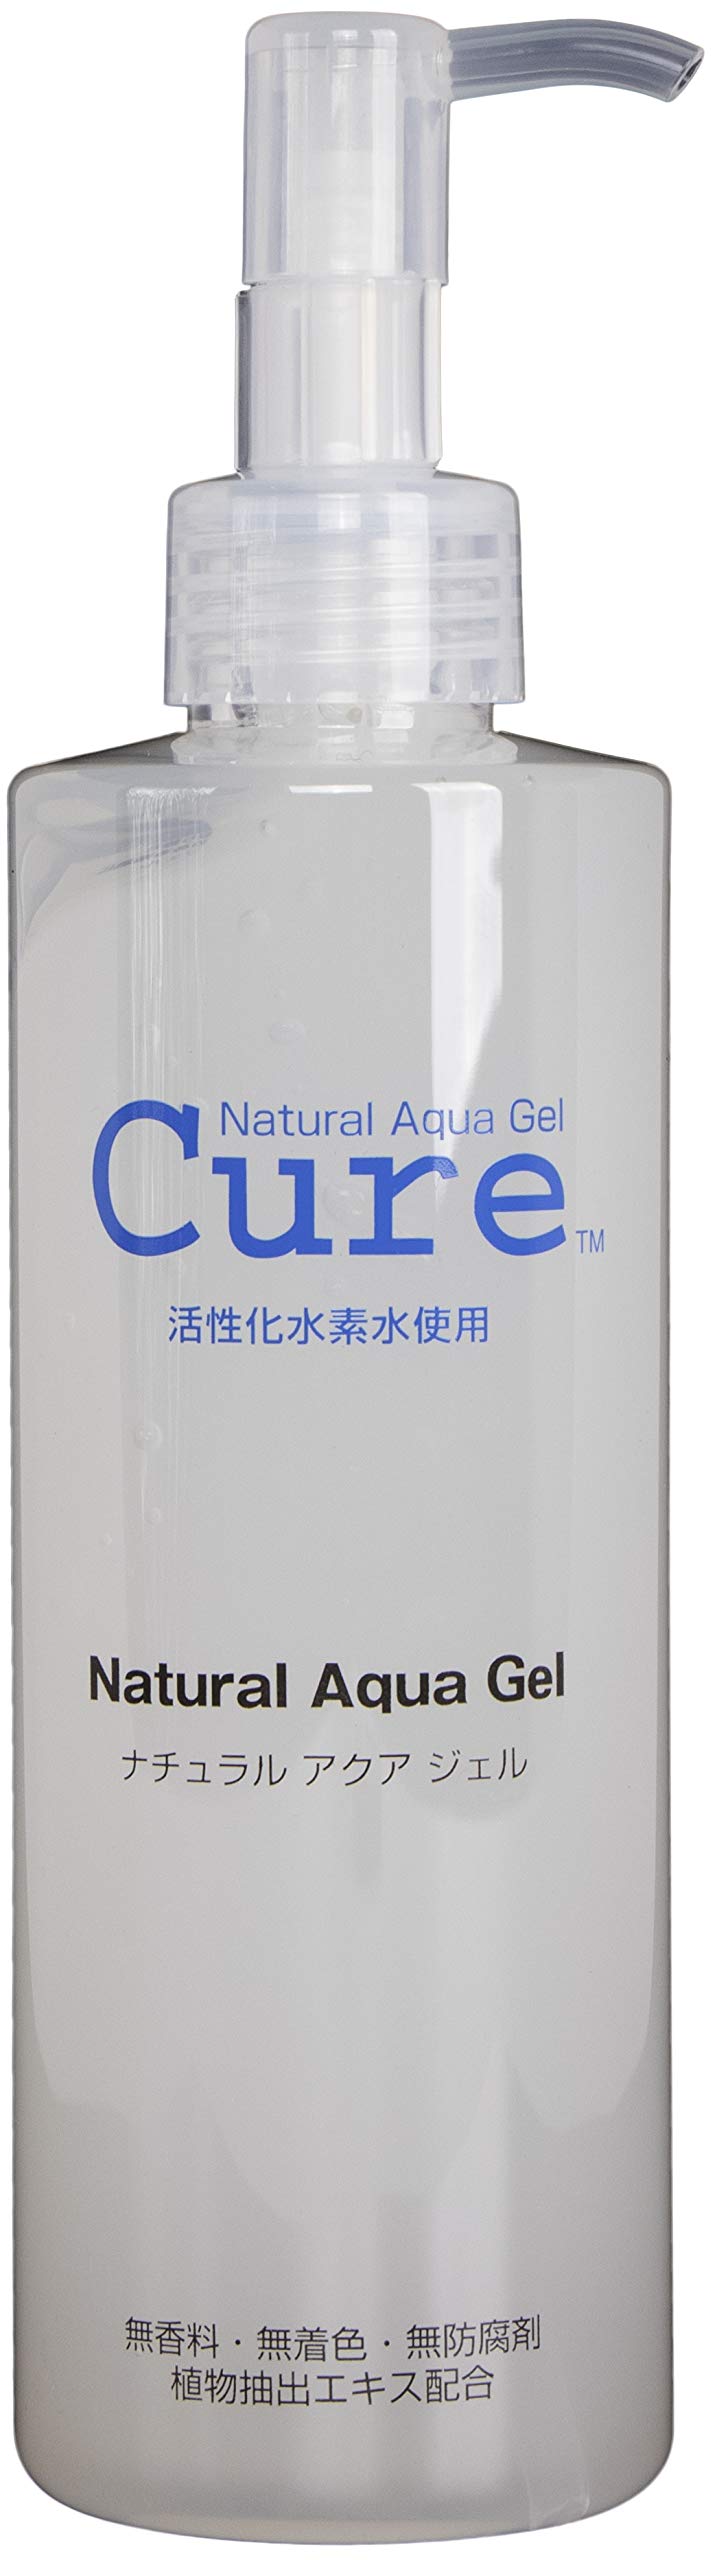 Natural Aqua Gel. Скатка для лица Aqua. Cure natural Aqua Gel. Аква гель для лица. Aqua gel отзывы